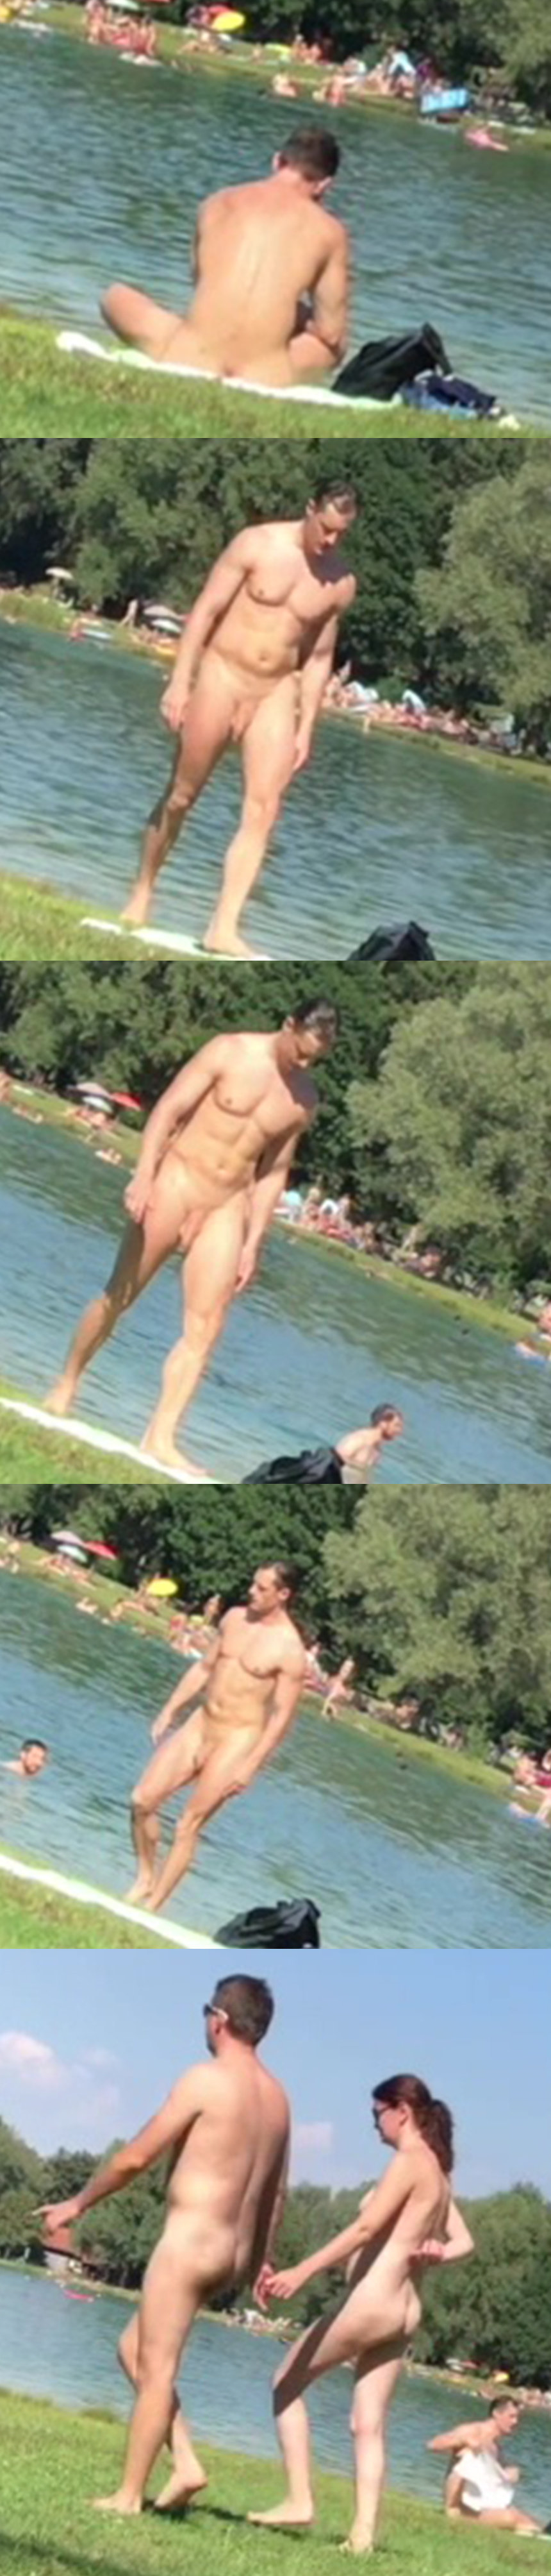 nudist men at the lake beach